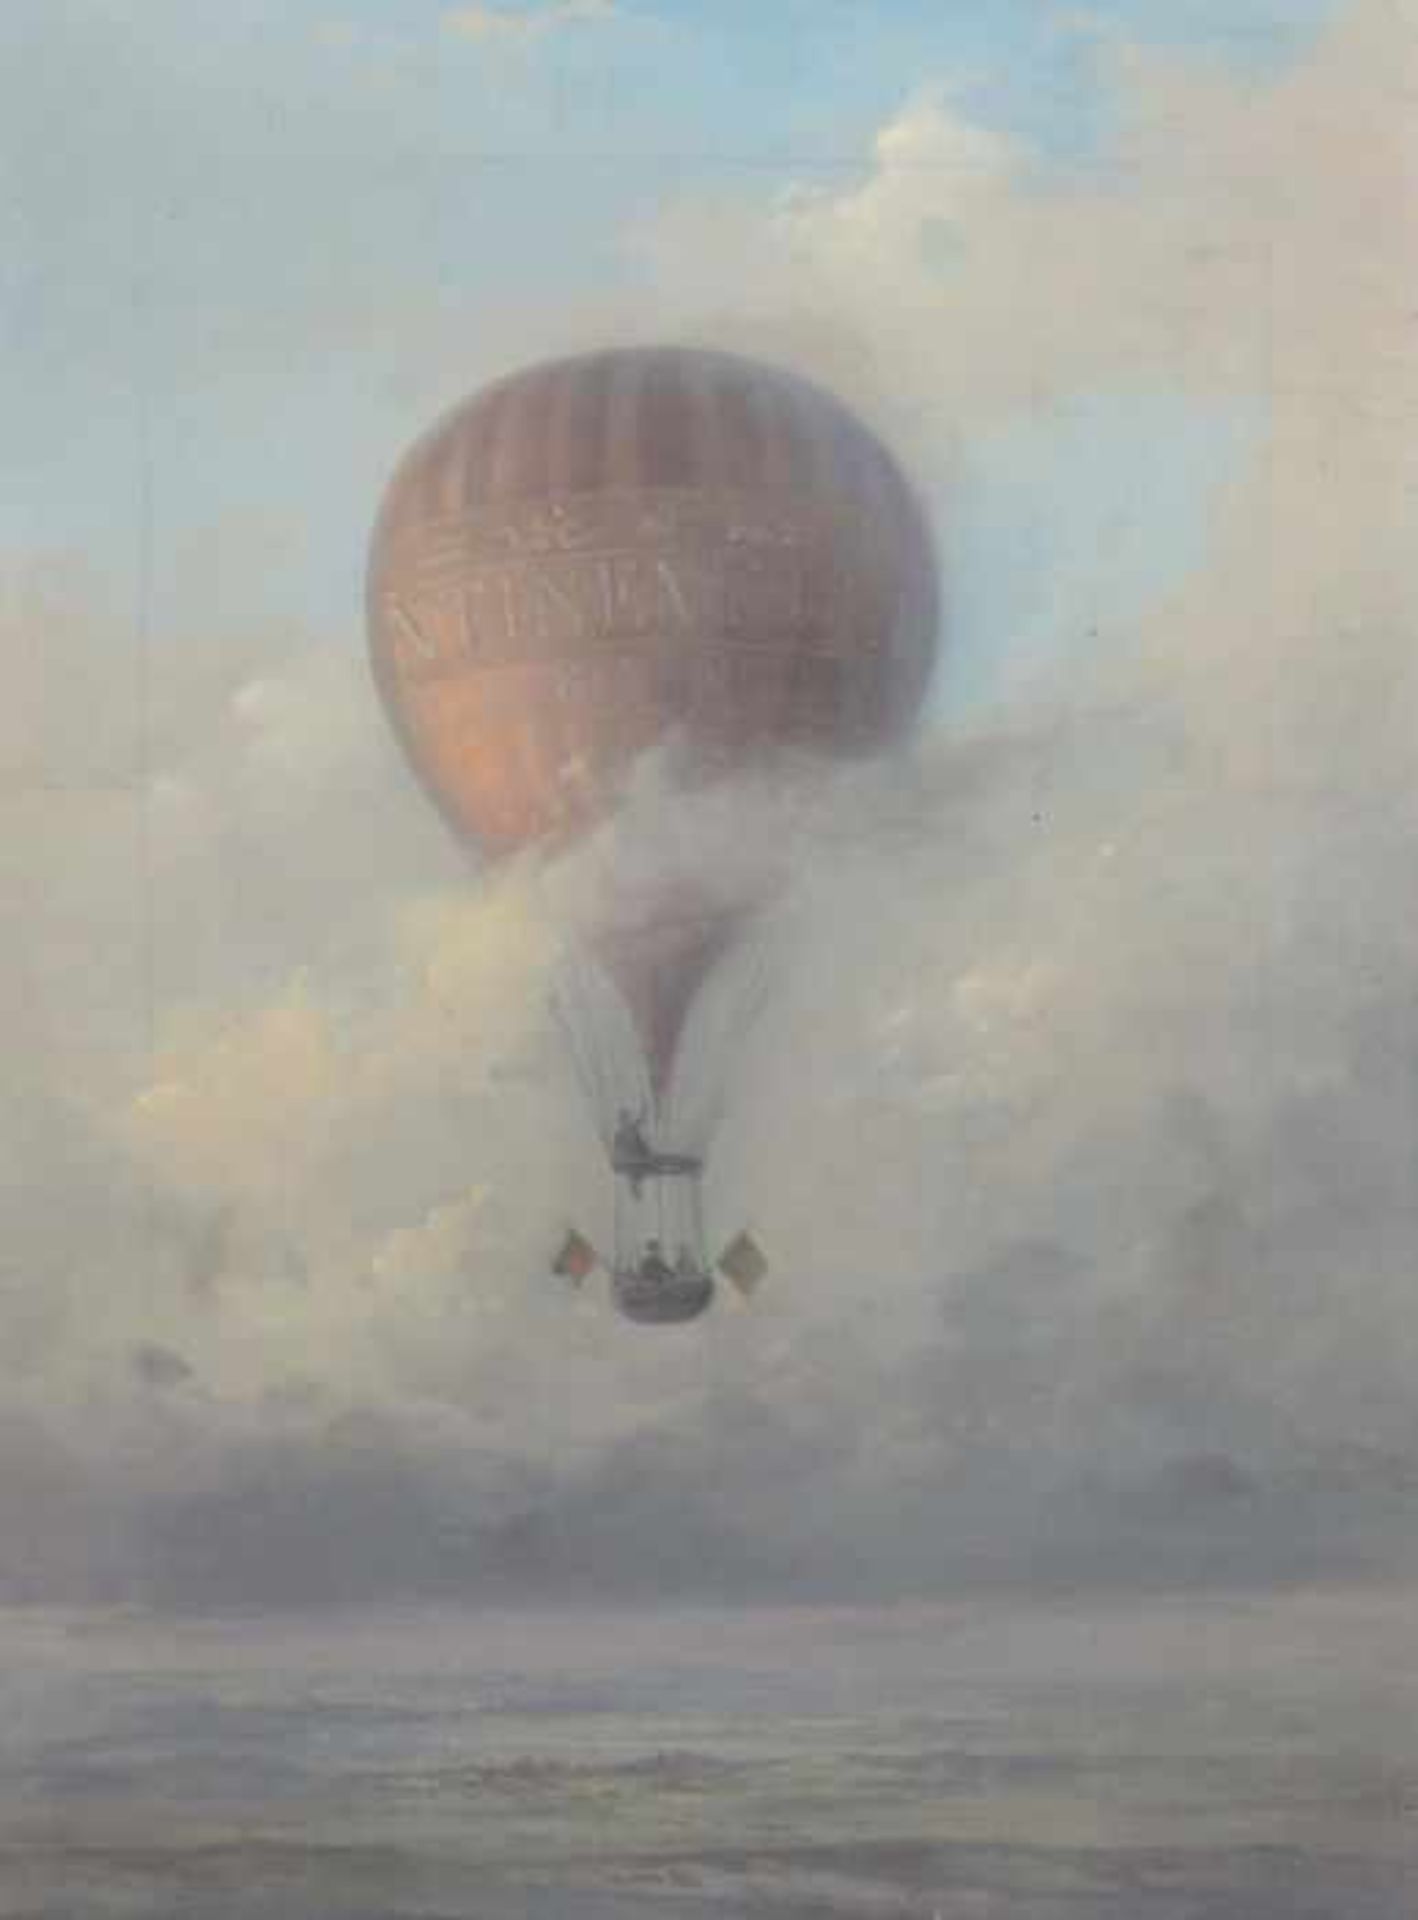 Maler des 19./20. Jh. "Ballonfahrt", drei Männer in einem Fesselballon, über einer Landschaft mit